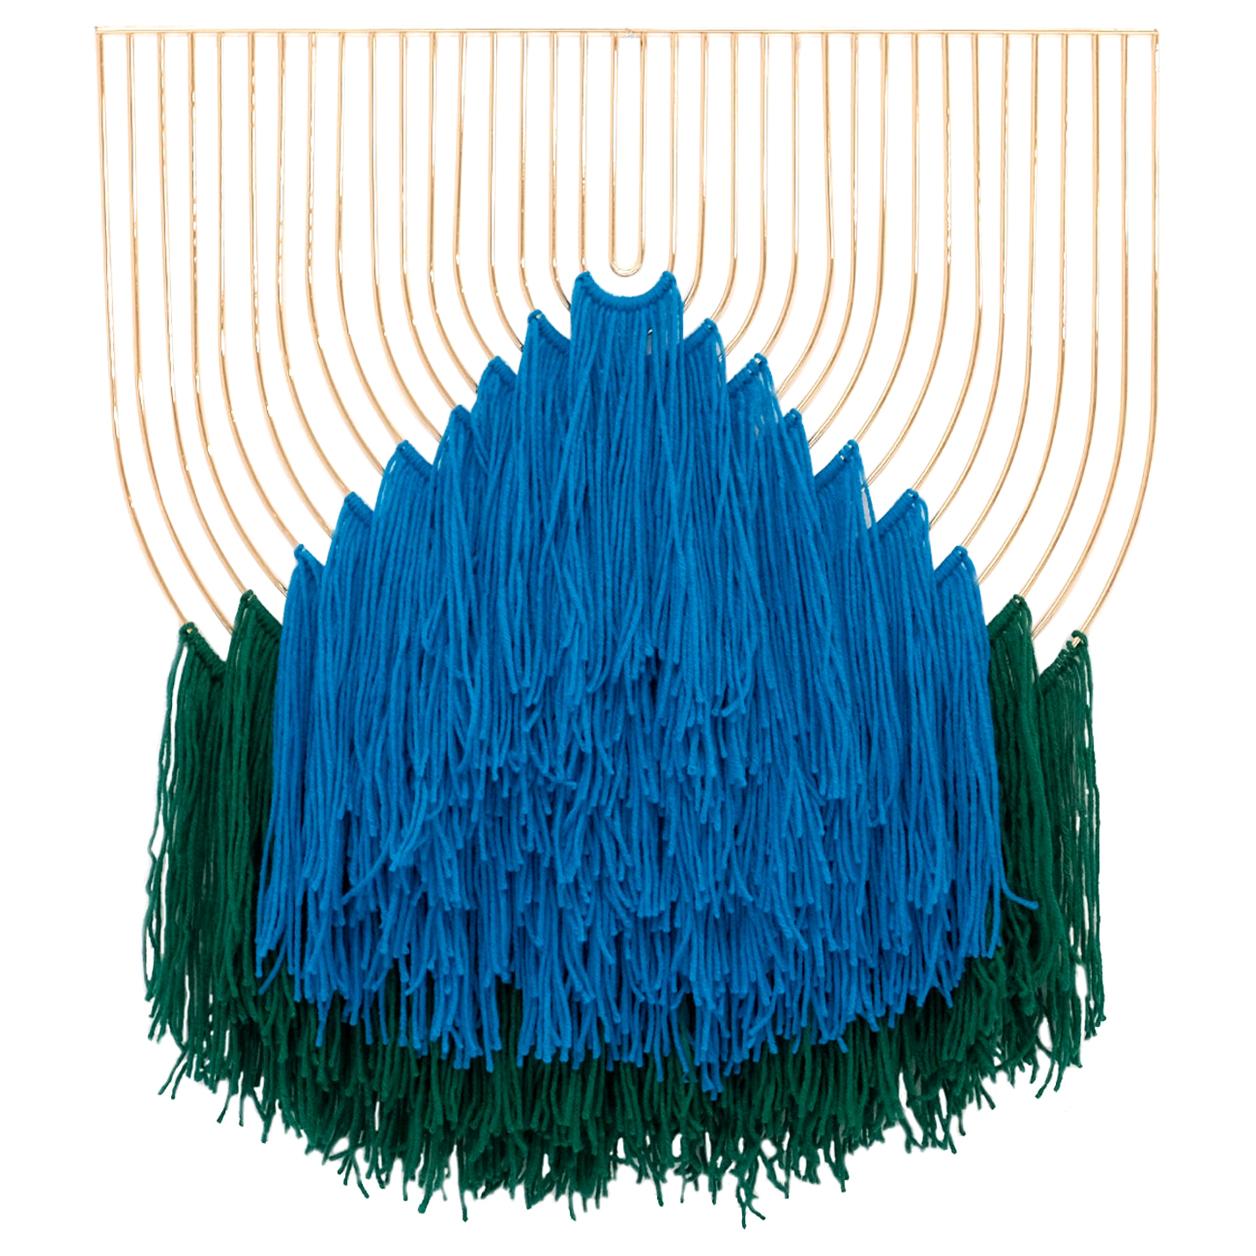 Modern Macrame Art, Wire Macrame Art Piece by Bend Goods, Blue Green